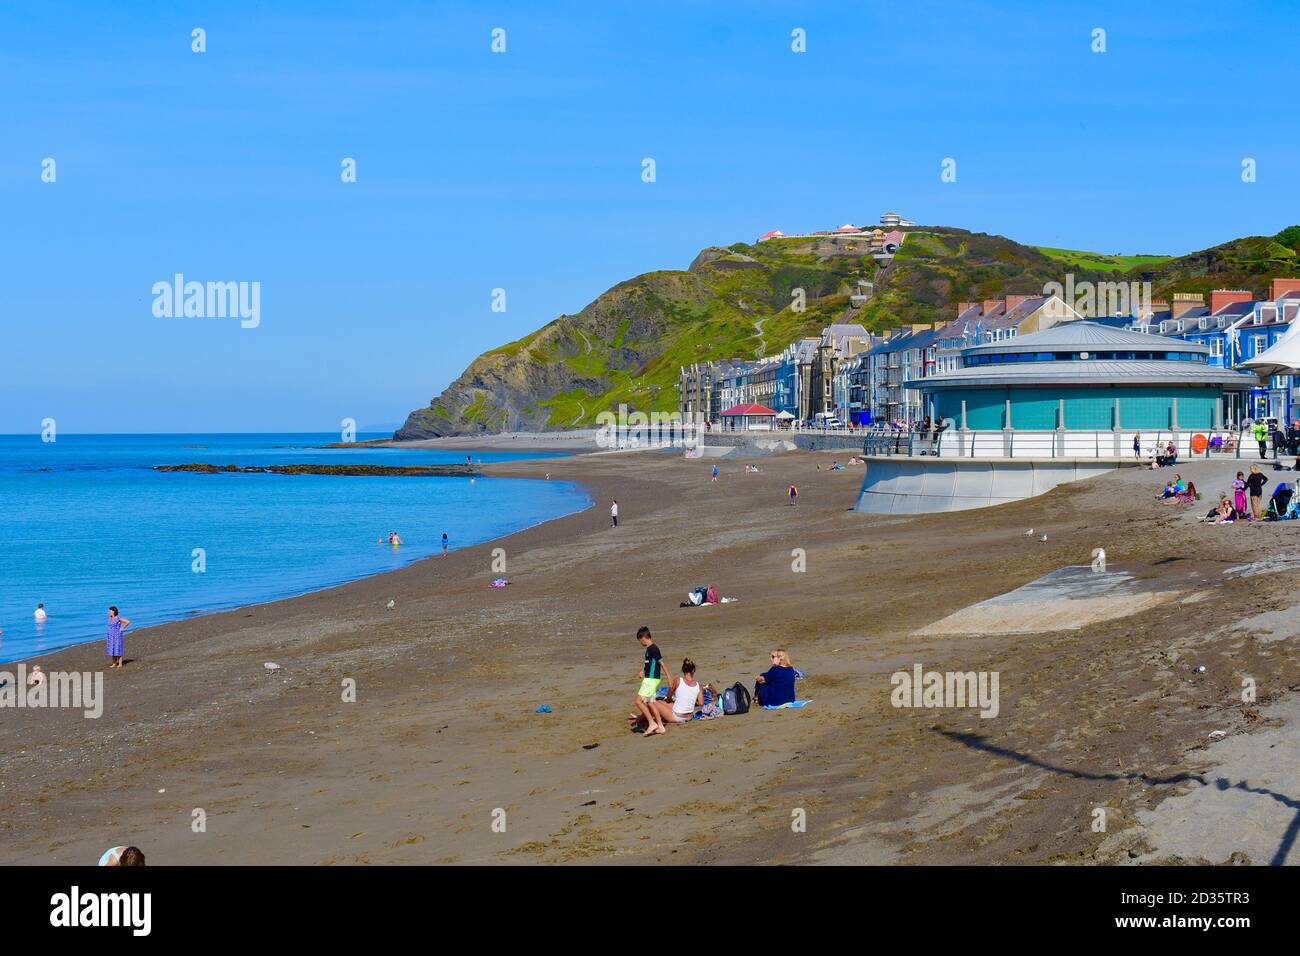 Die Strandpromenade & Strand in Aberystwyth.Menschen am Strand im Spätsommer Sonnenschein. Constitution Hill im Hintergrund mit Klippenbahn nach oben. Stockfoto